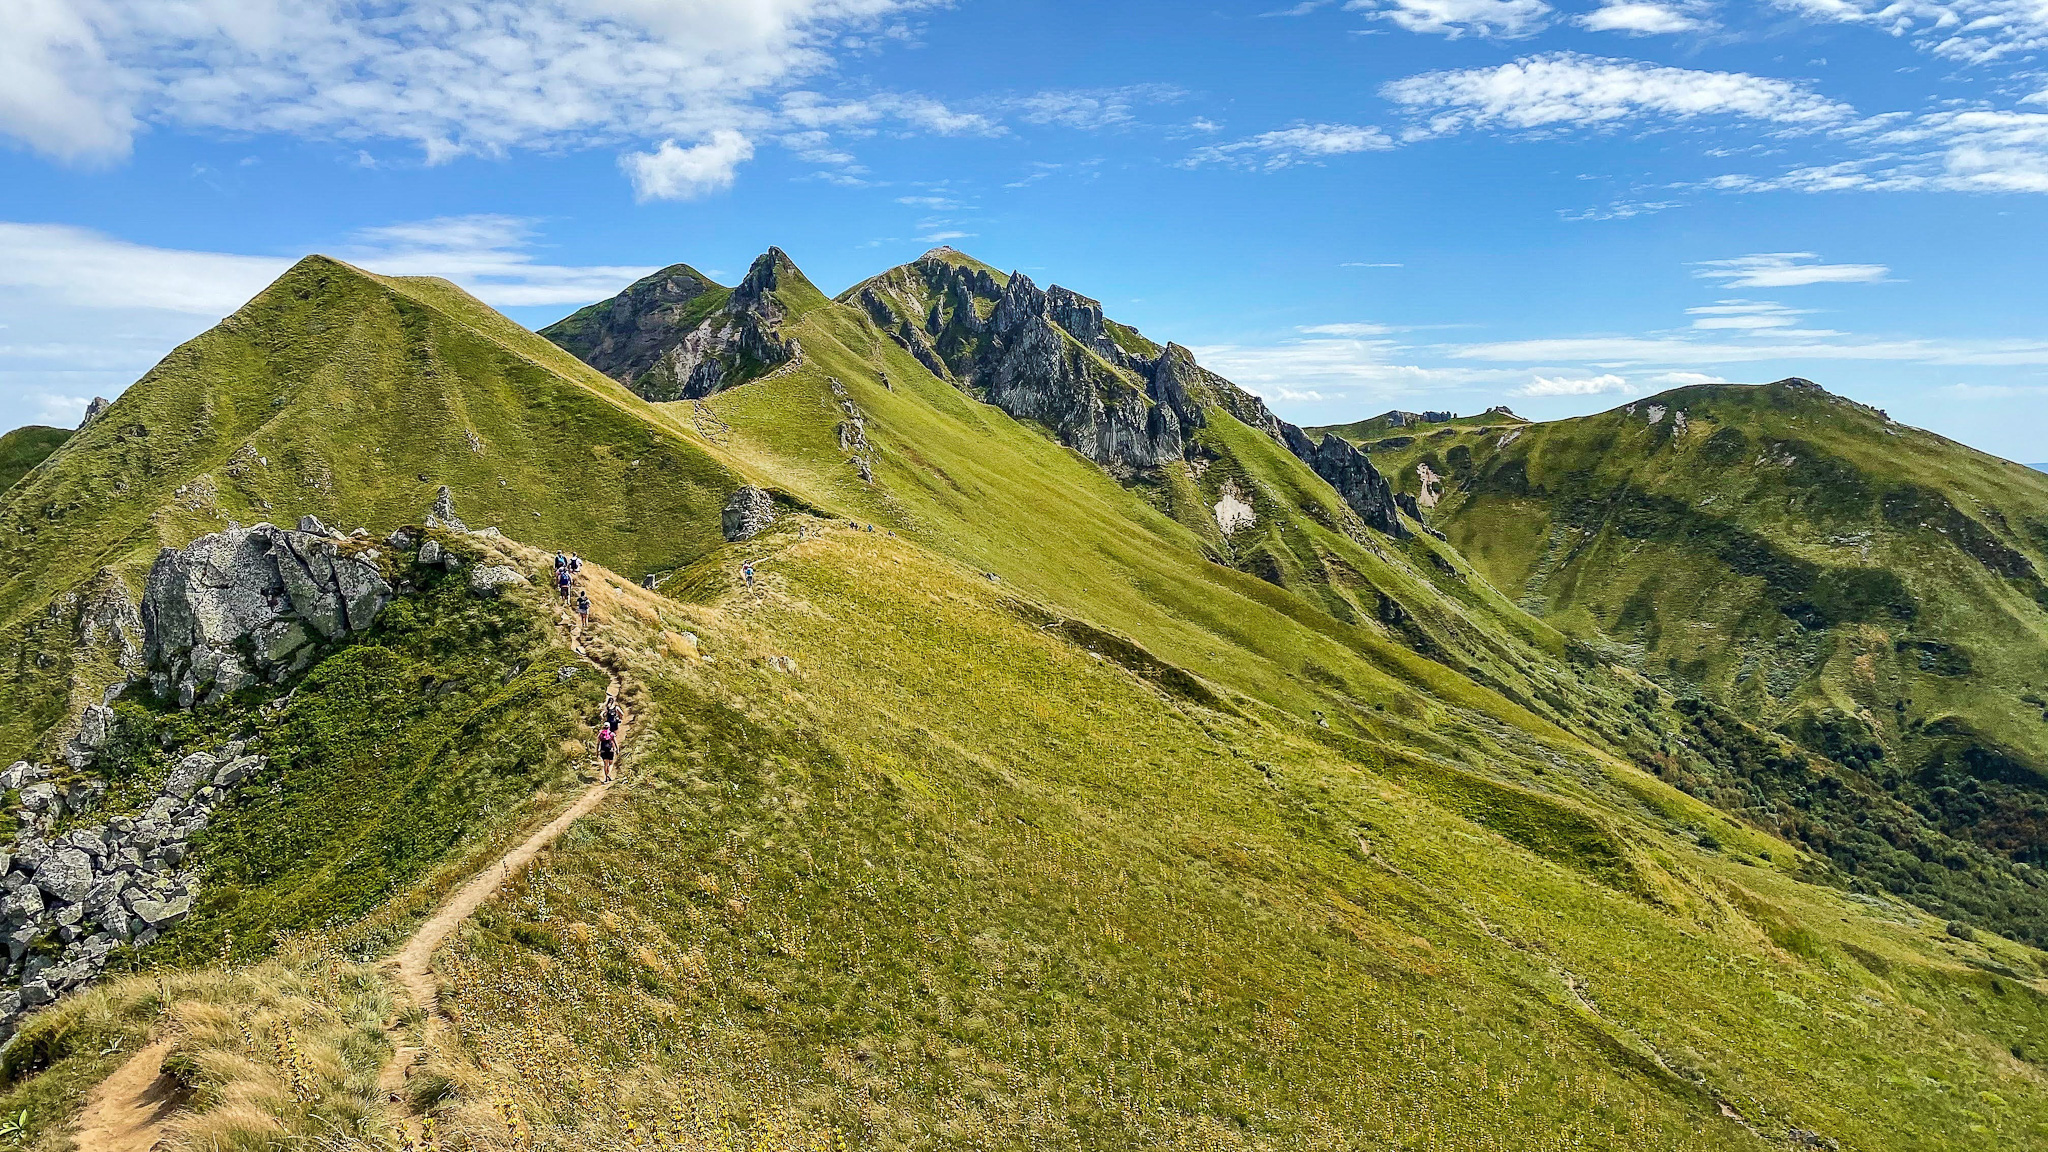 The ridge path towards Puy de Sancy